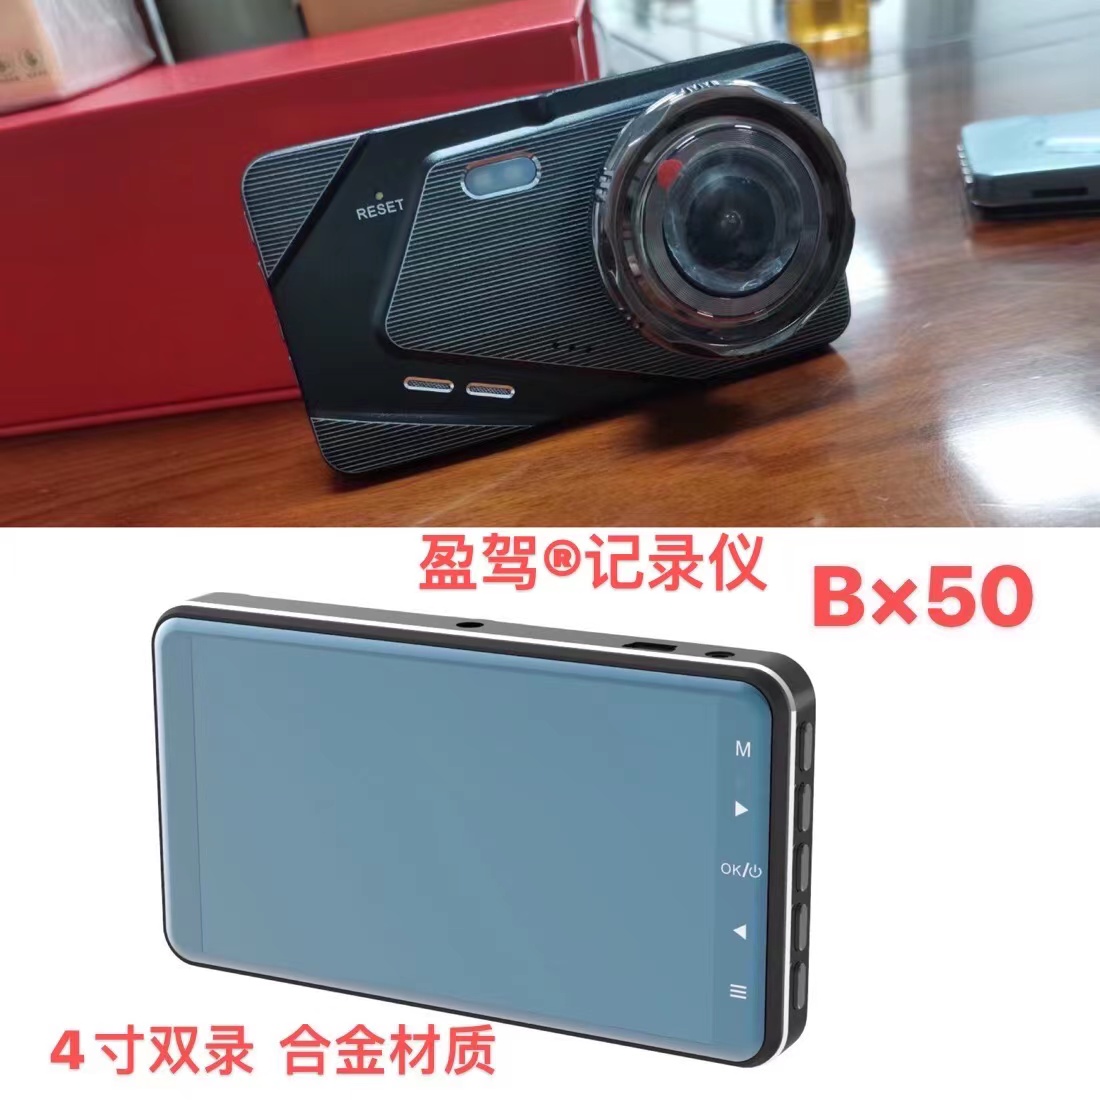 Prezantohet kamera e automjetit -- marka YJ -- produkti i ri -- BX50